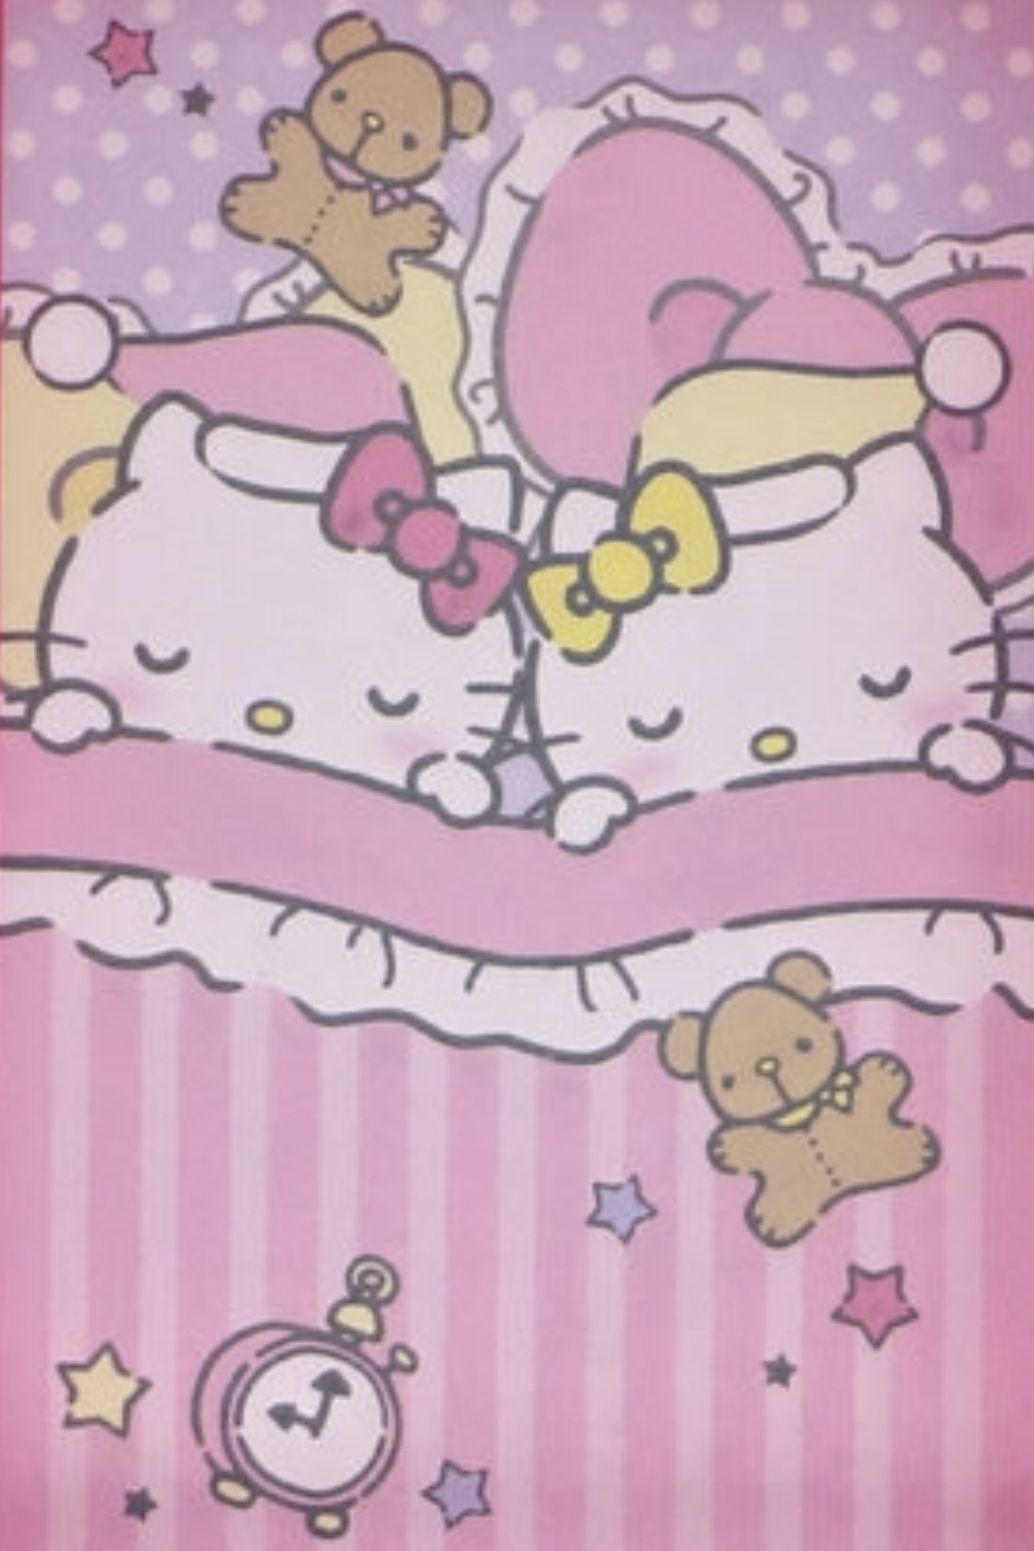 Hello Kitty Mimmy Hello kitty art Sanrio hello kitty Hello